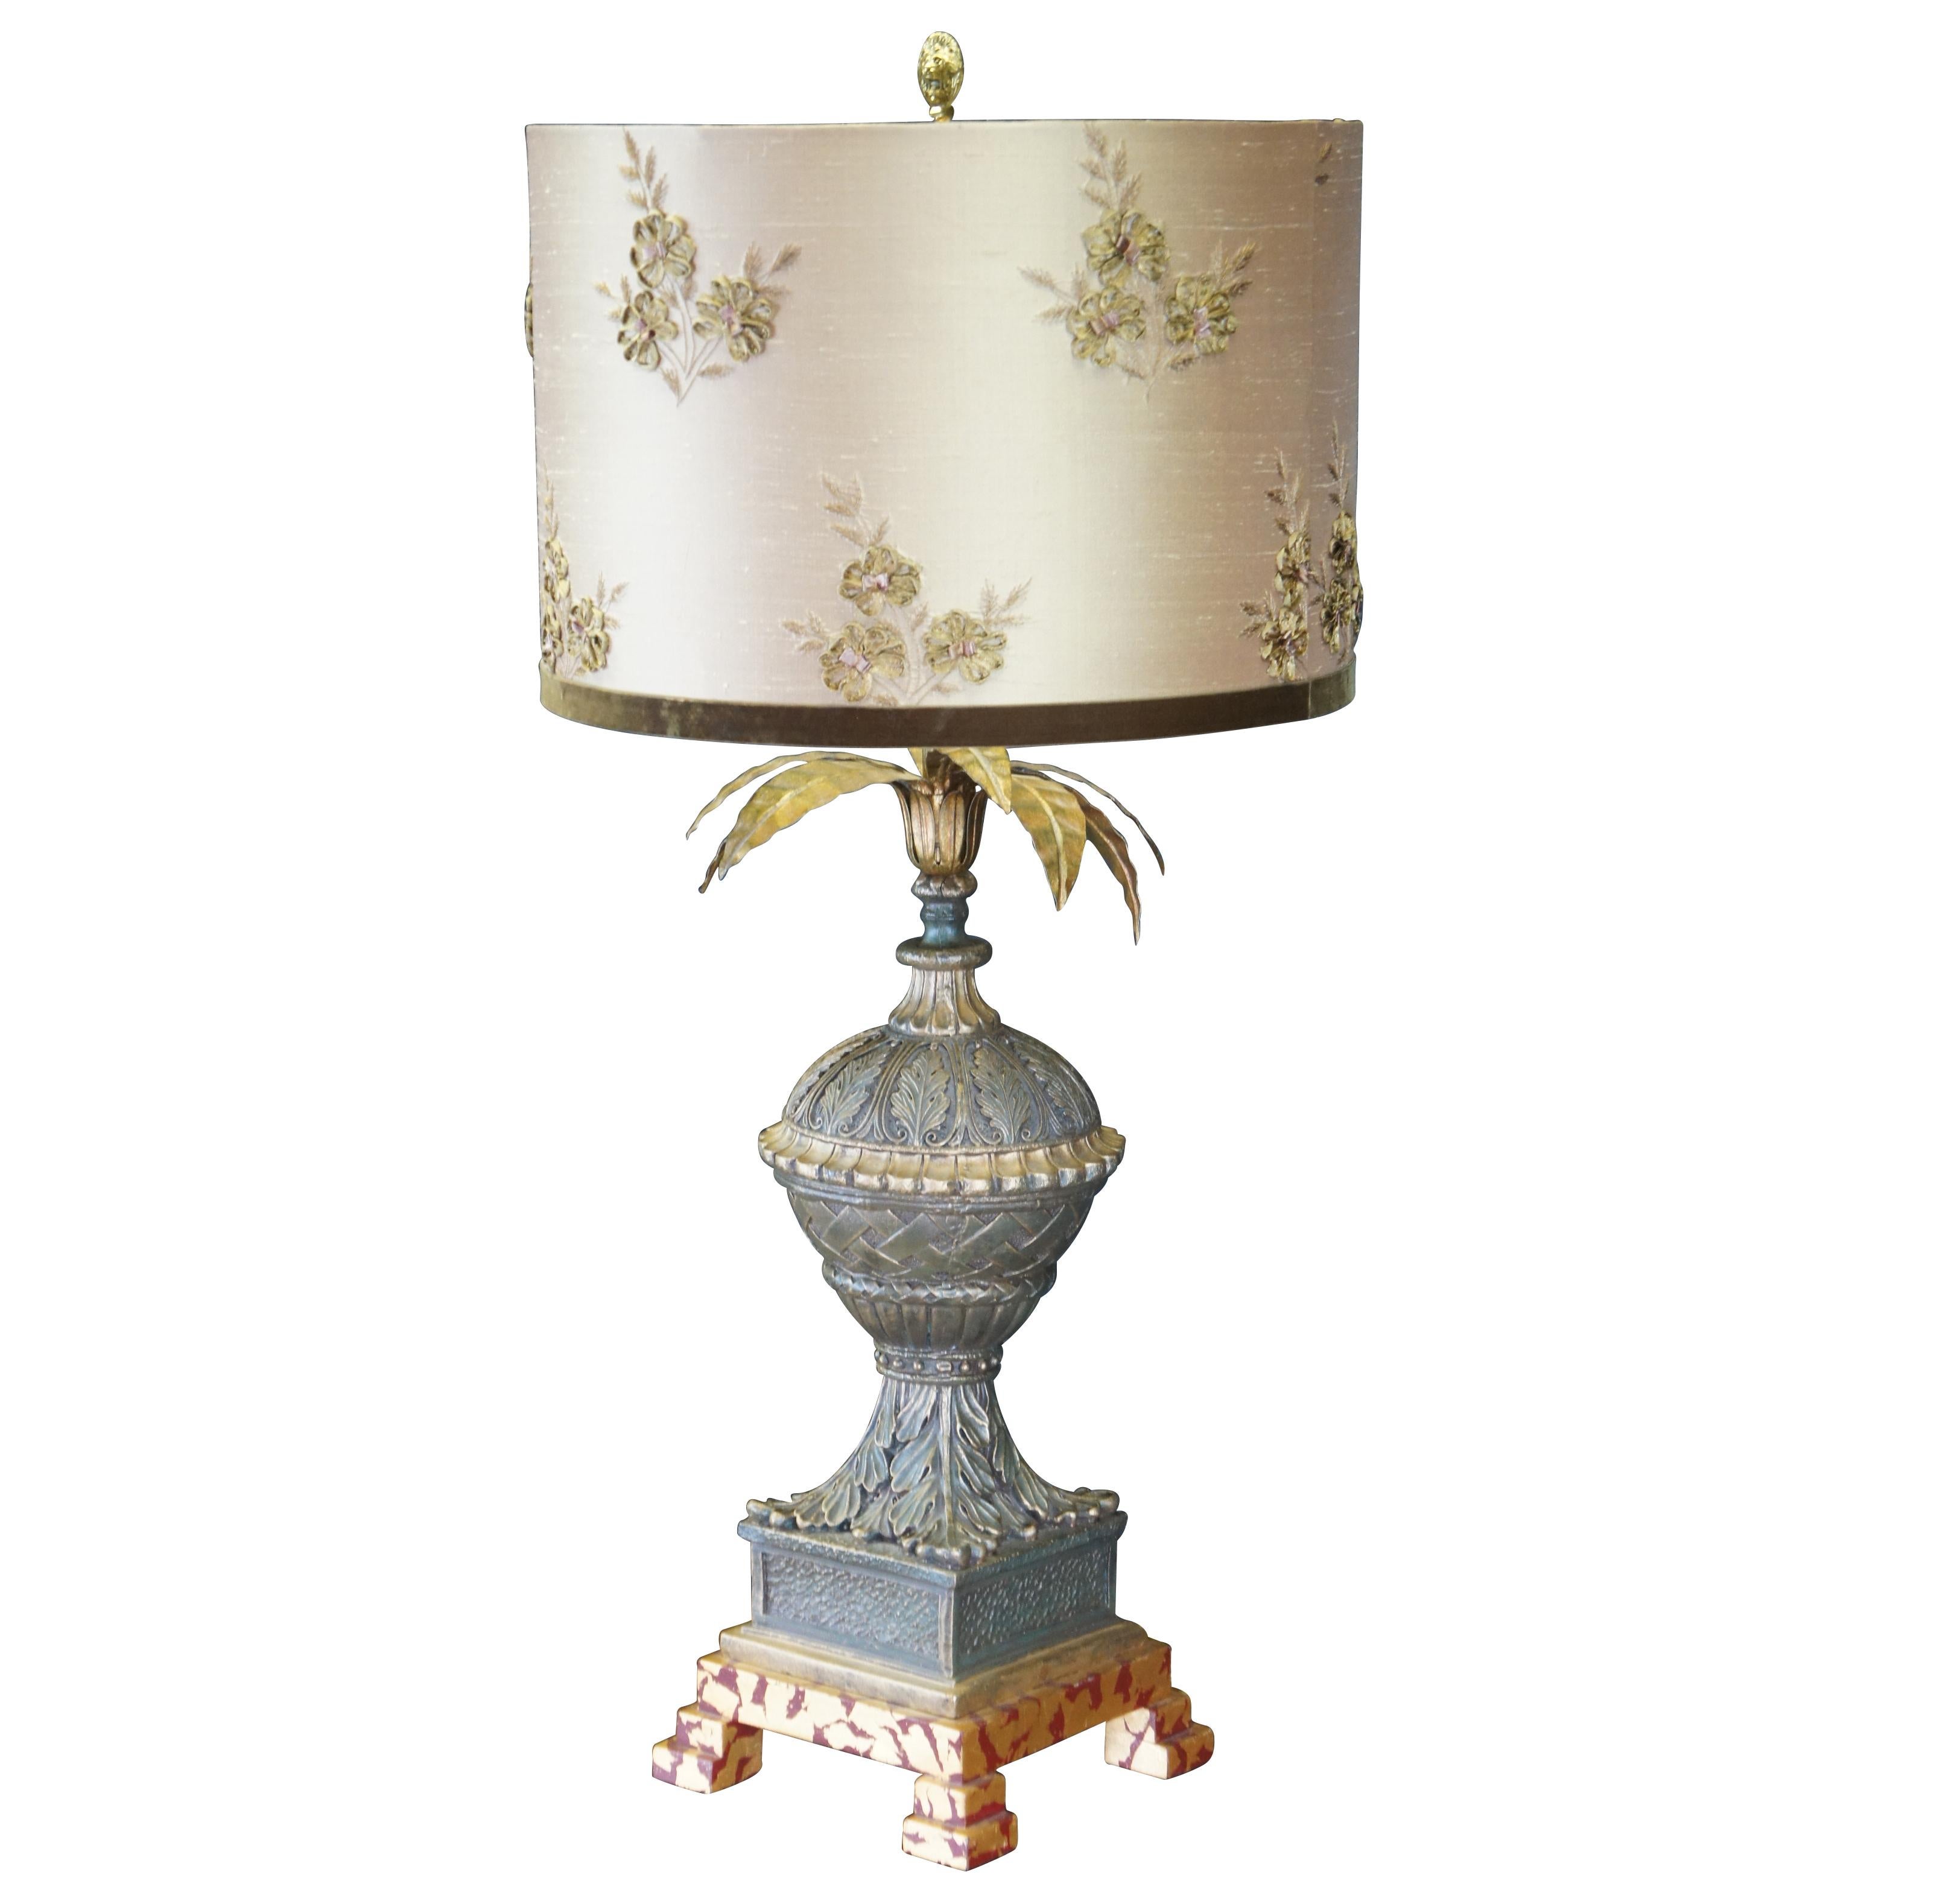 Lampe de table ou buffet Frederick Cooper de la fin du 20e siècle.  La base ornée à la manière d'une urne française présente des motifs de vannerie et d'acanthe sur un socle et un pied en faux marbre.  La lampe est dotée d'une feuille d'ananas et